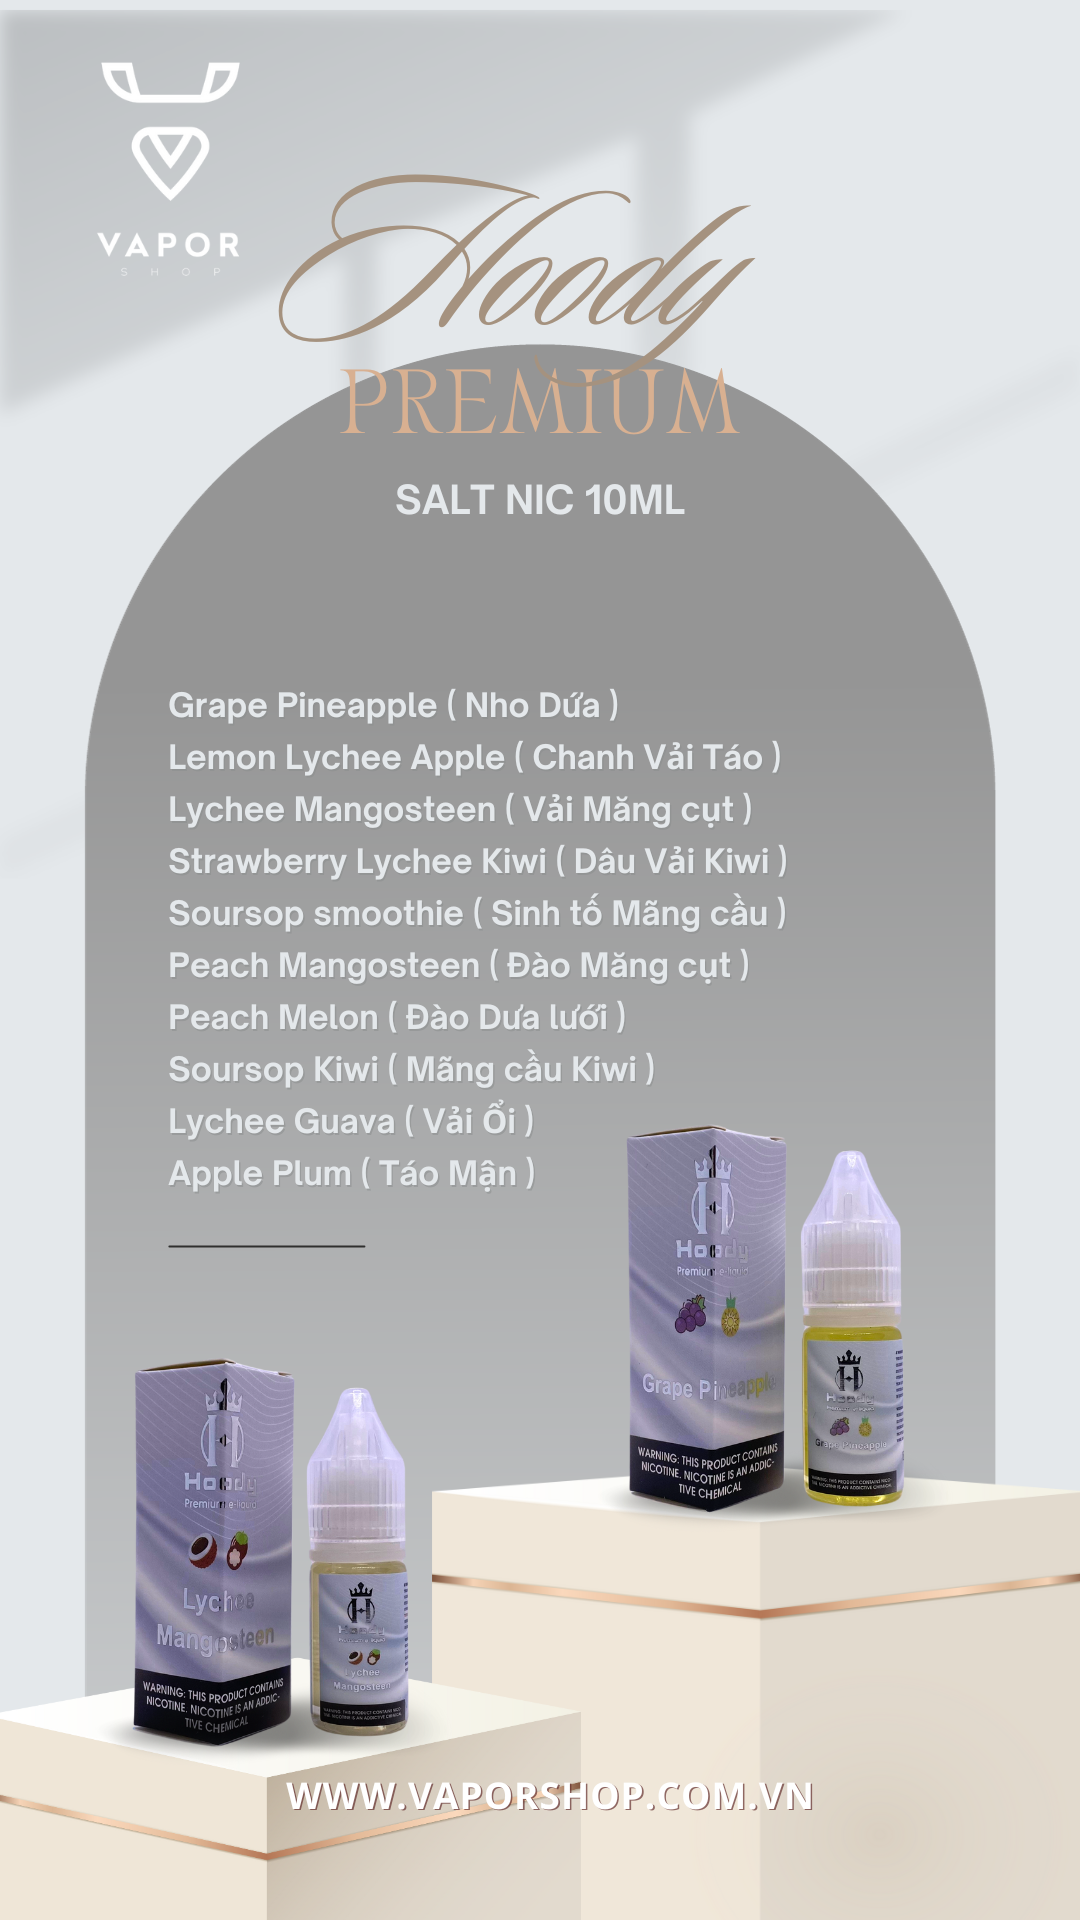 Hoody juice salt nic 10ml giá rẻ tại vaporshop